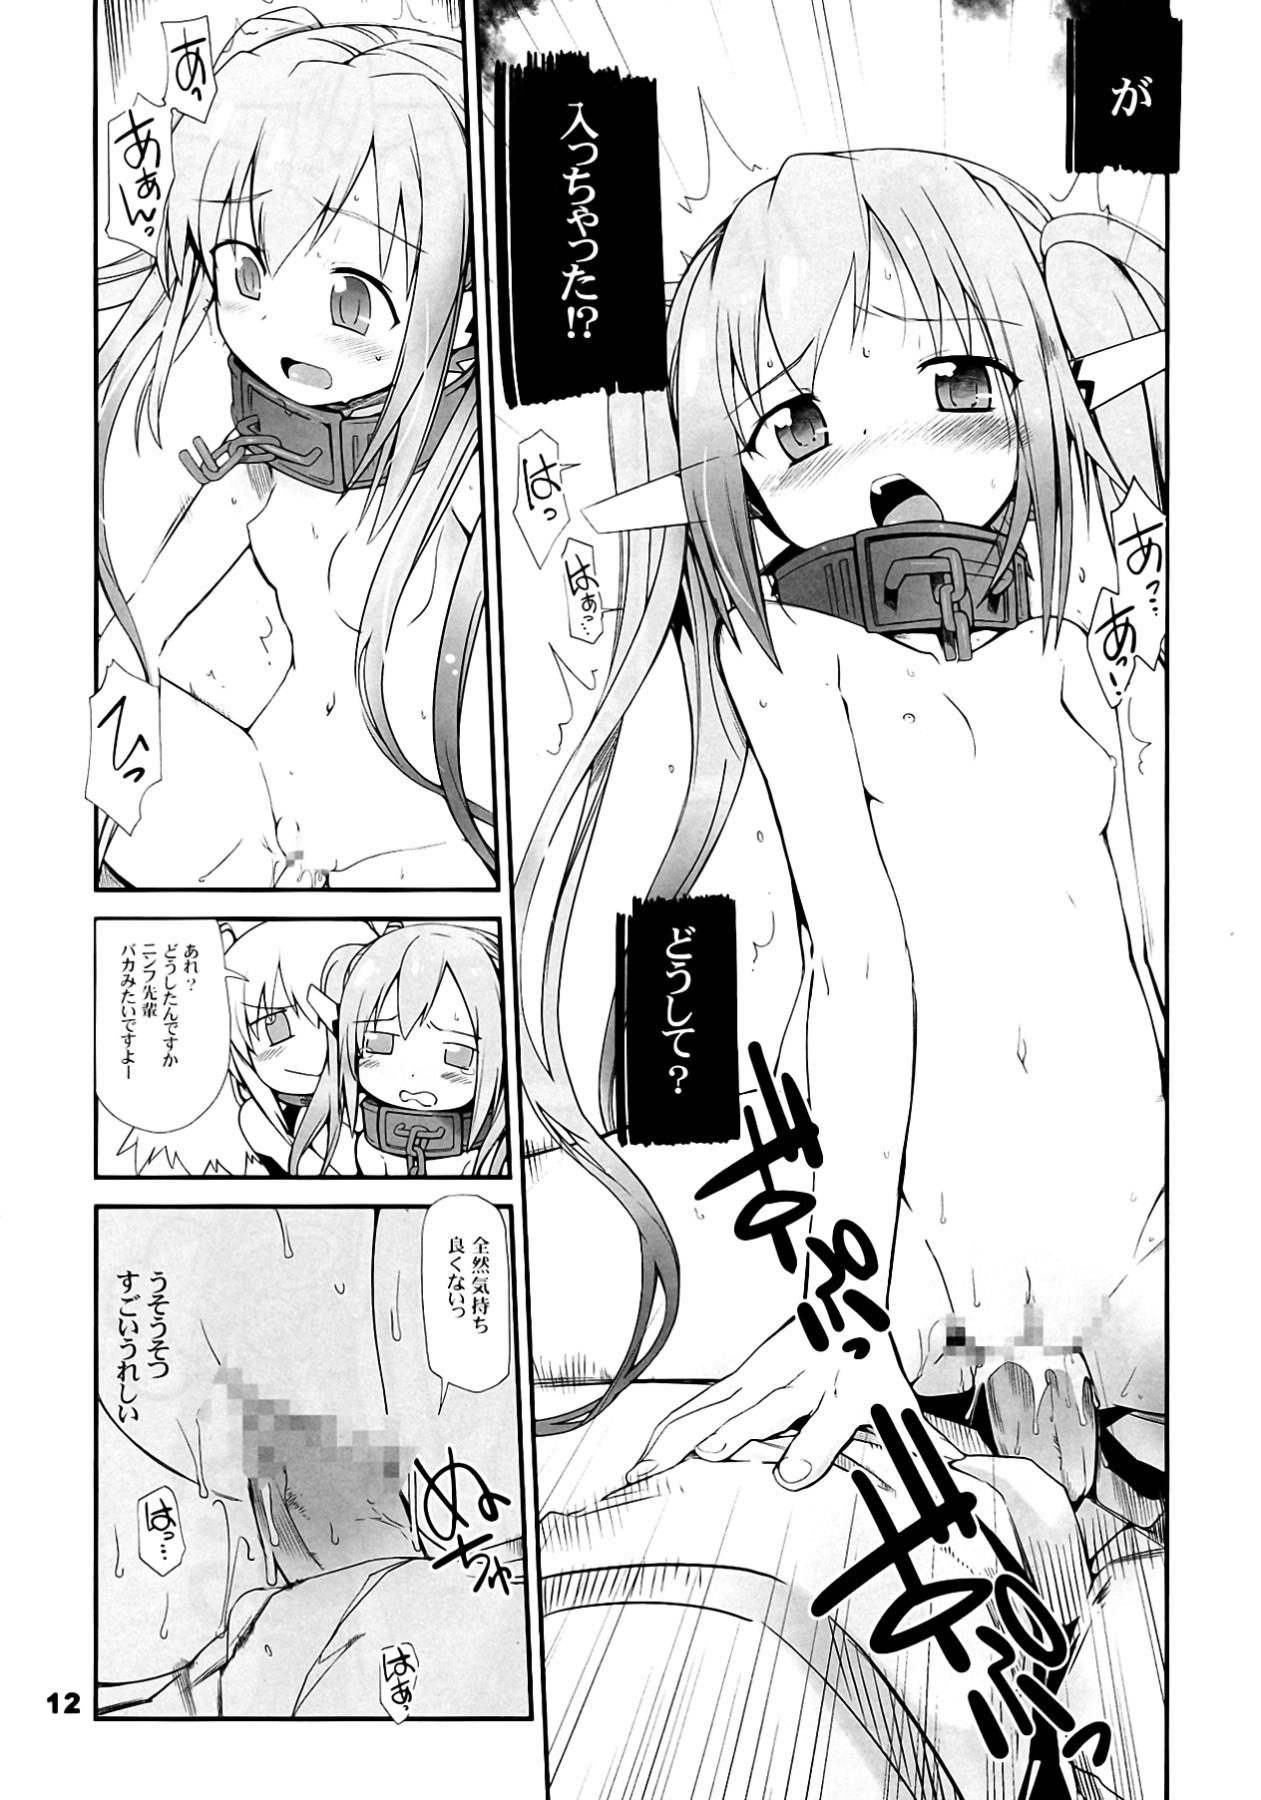 Verification Angeloid Maji Tenshi - Sora no otoshimono Couch - Page 12